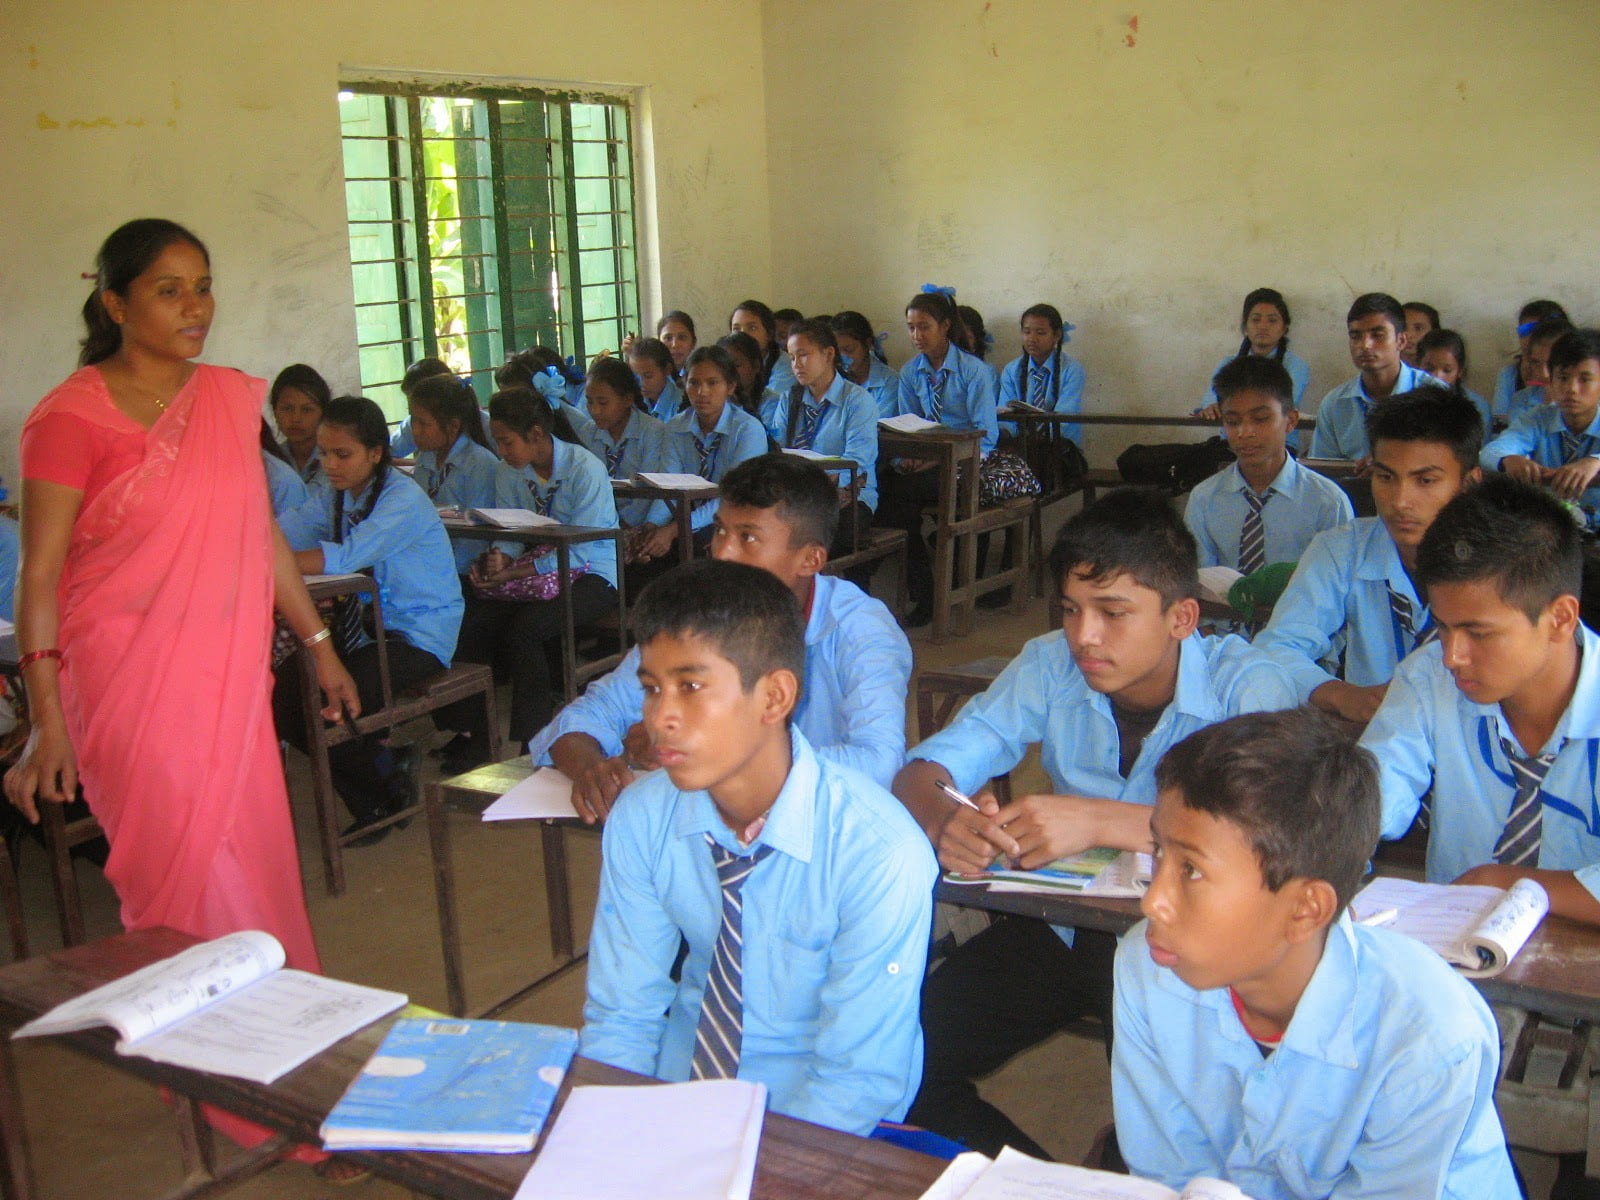 Мая калега Каплана з Непала выкладае ангельскую ў класе з 40 вучнямі